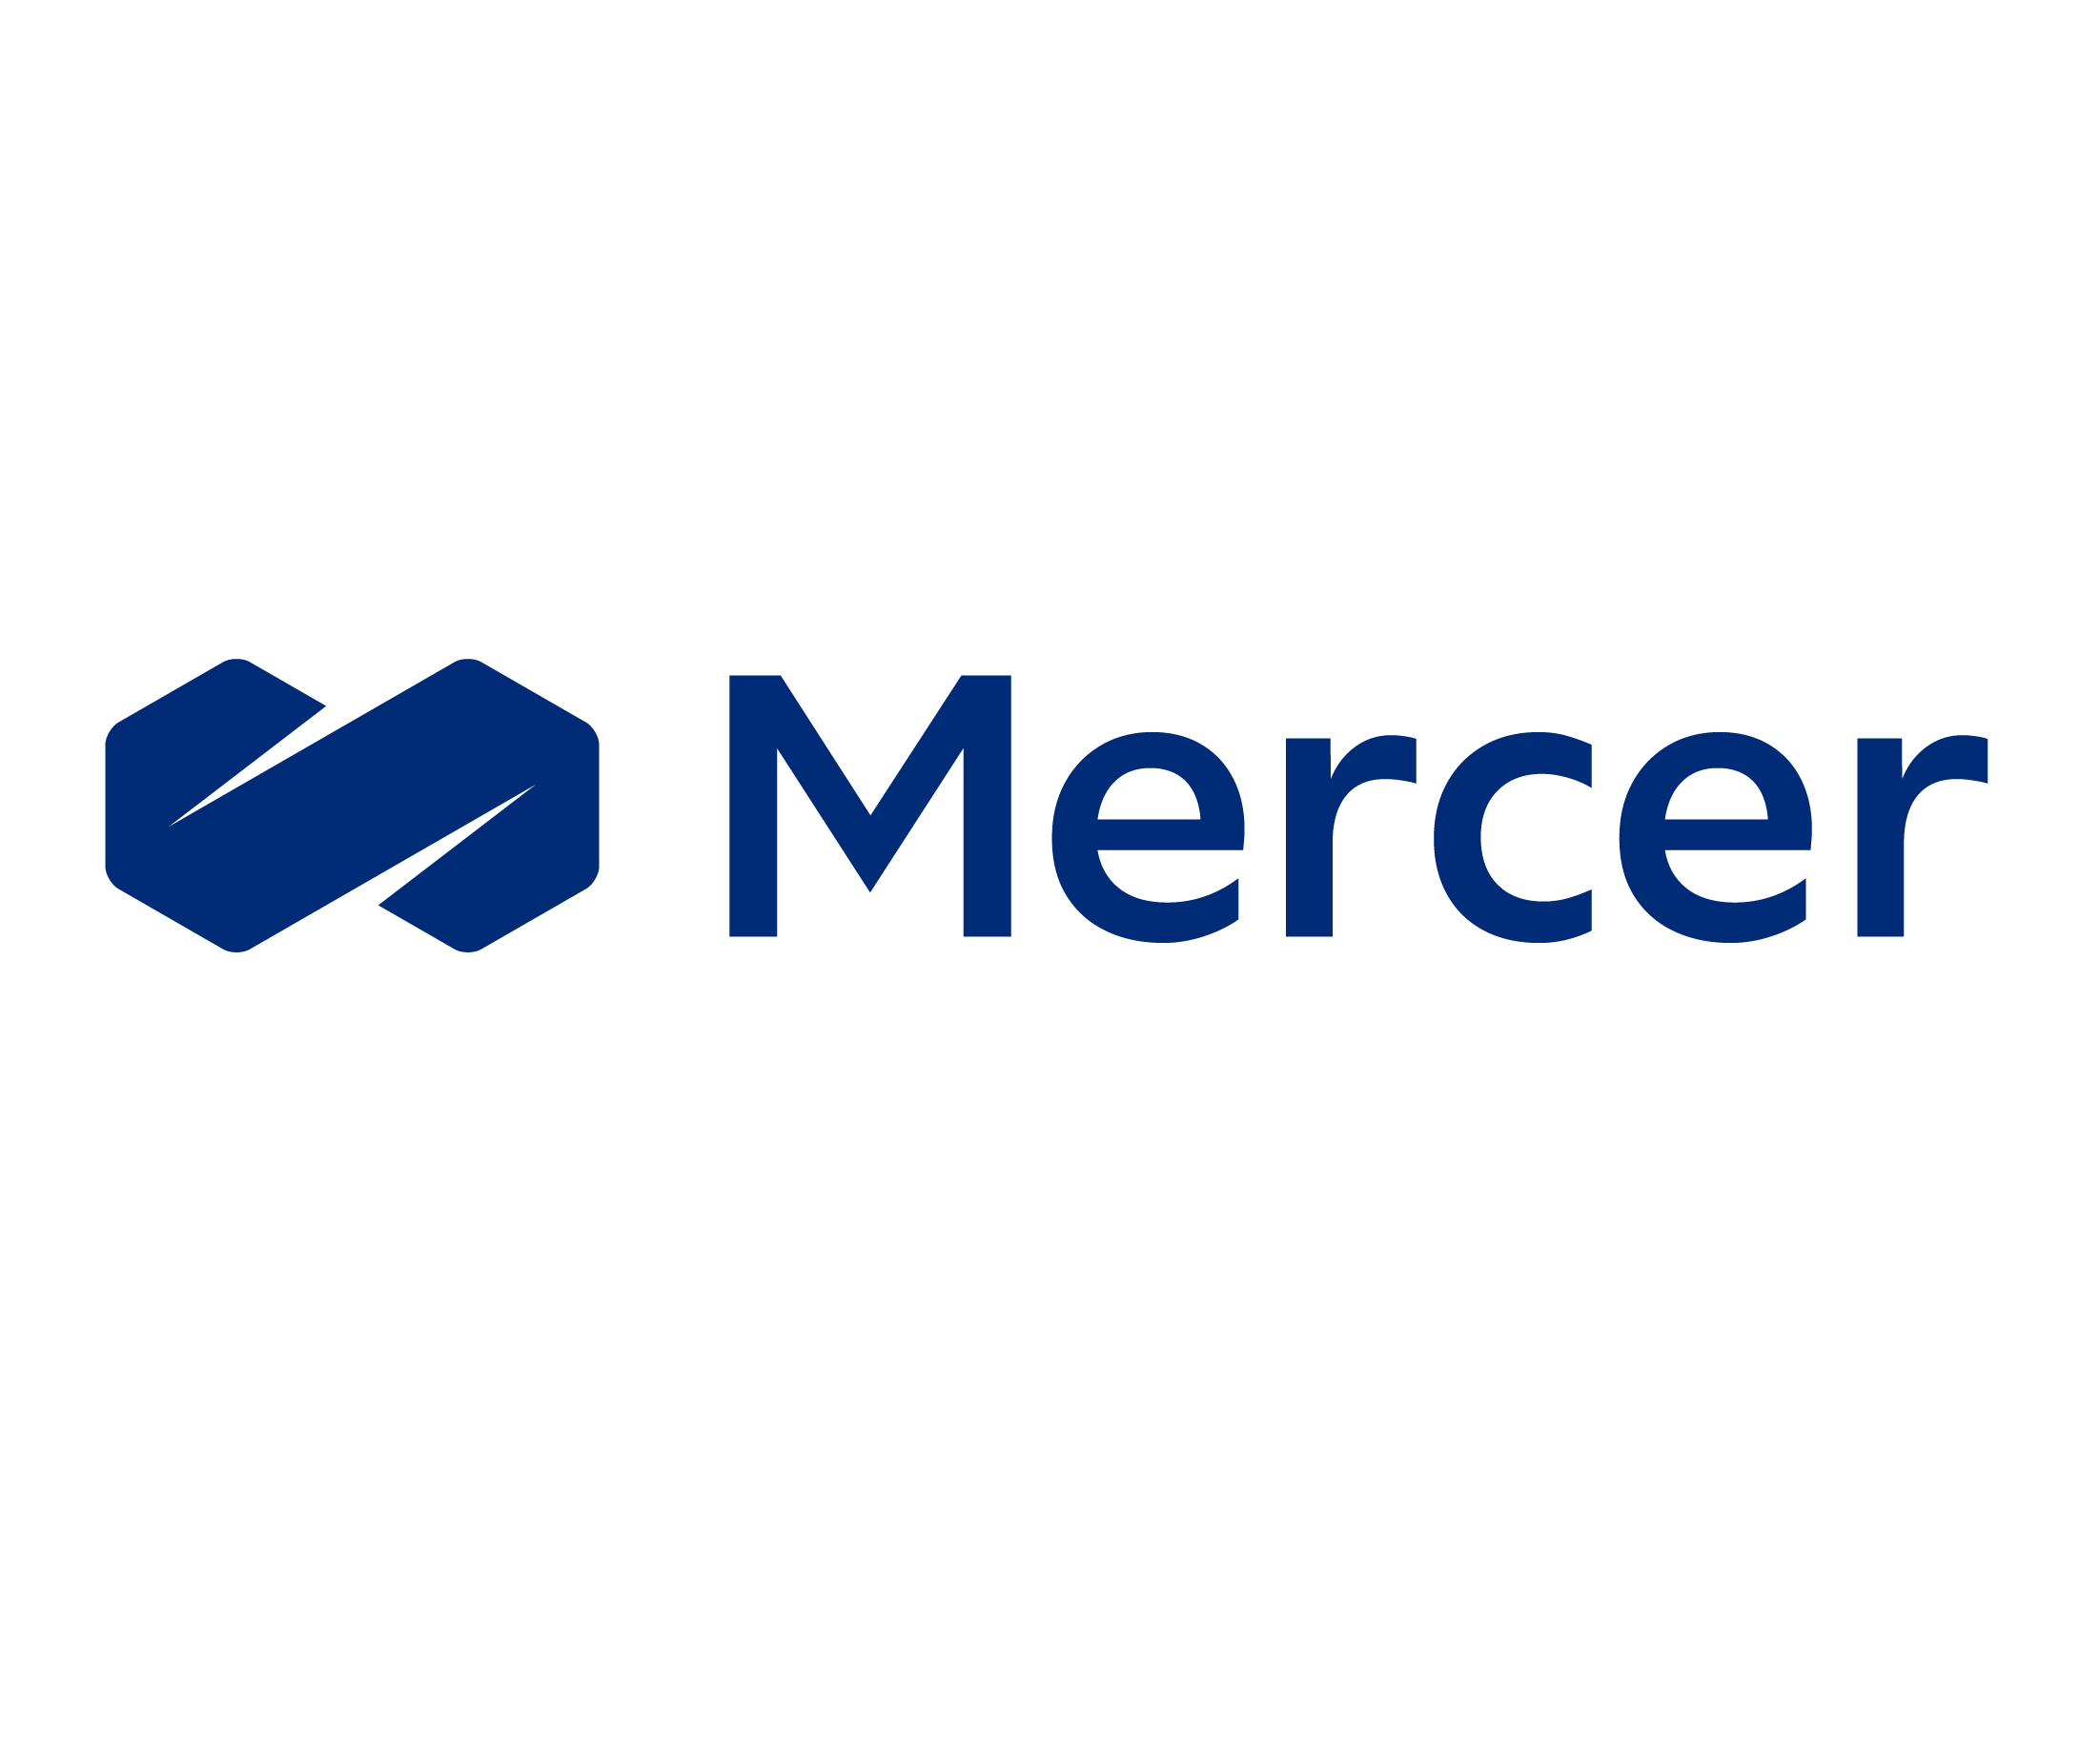 Mercer square logo